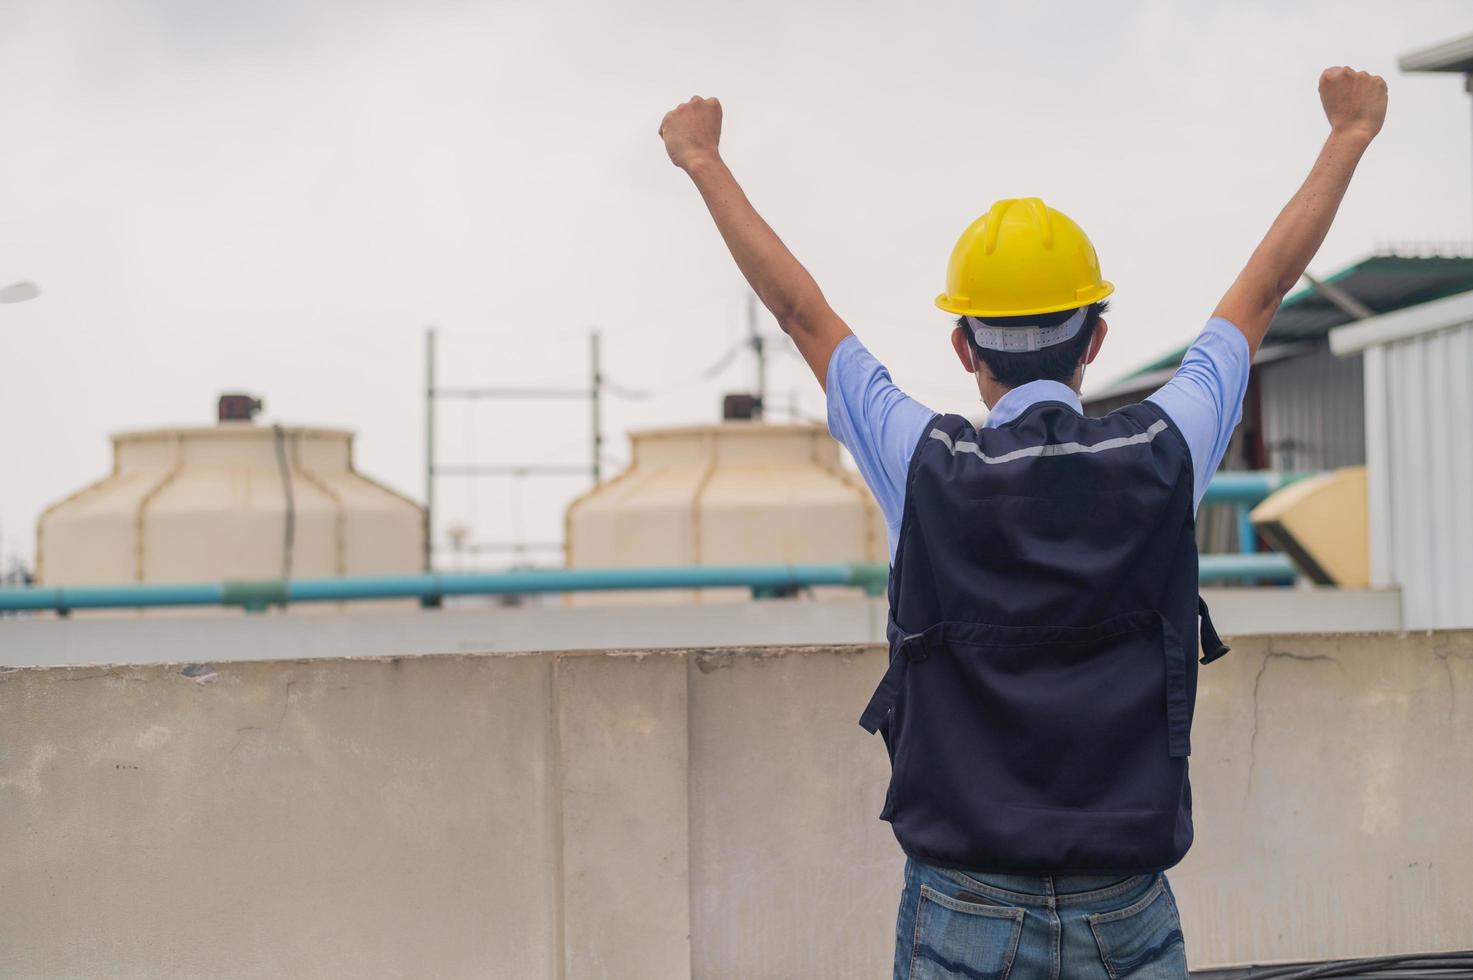 ingegnere in piedi sul tetto dell'edificio di produzione mostra impegno e successo foto